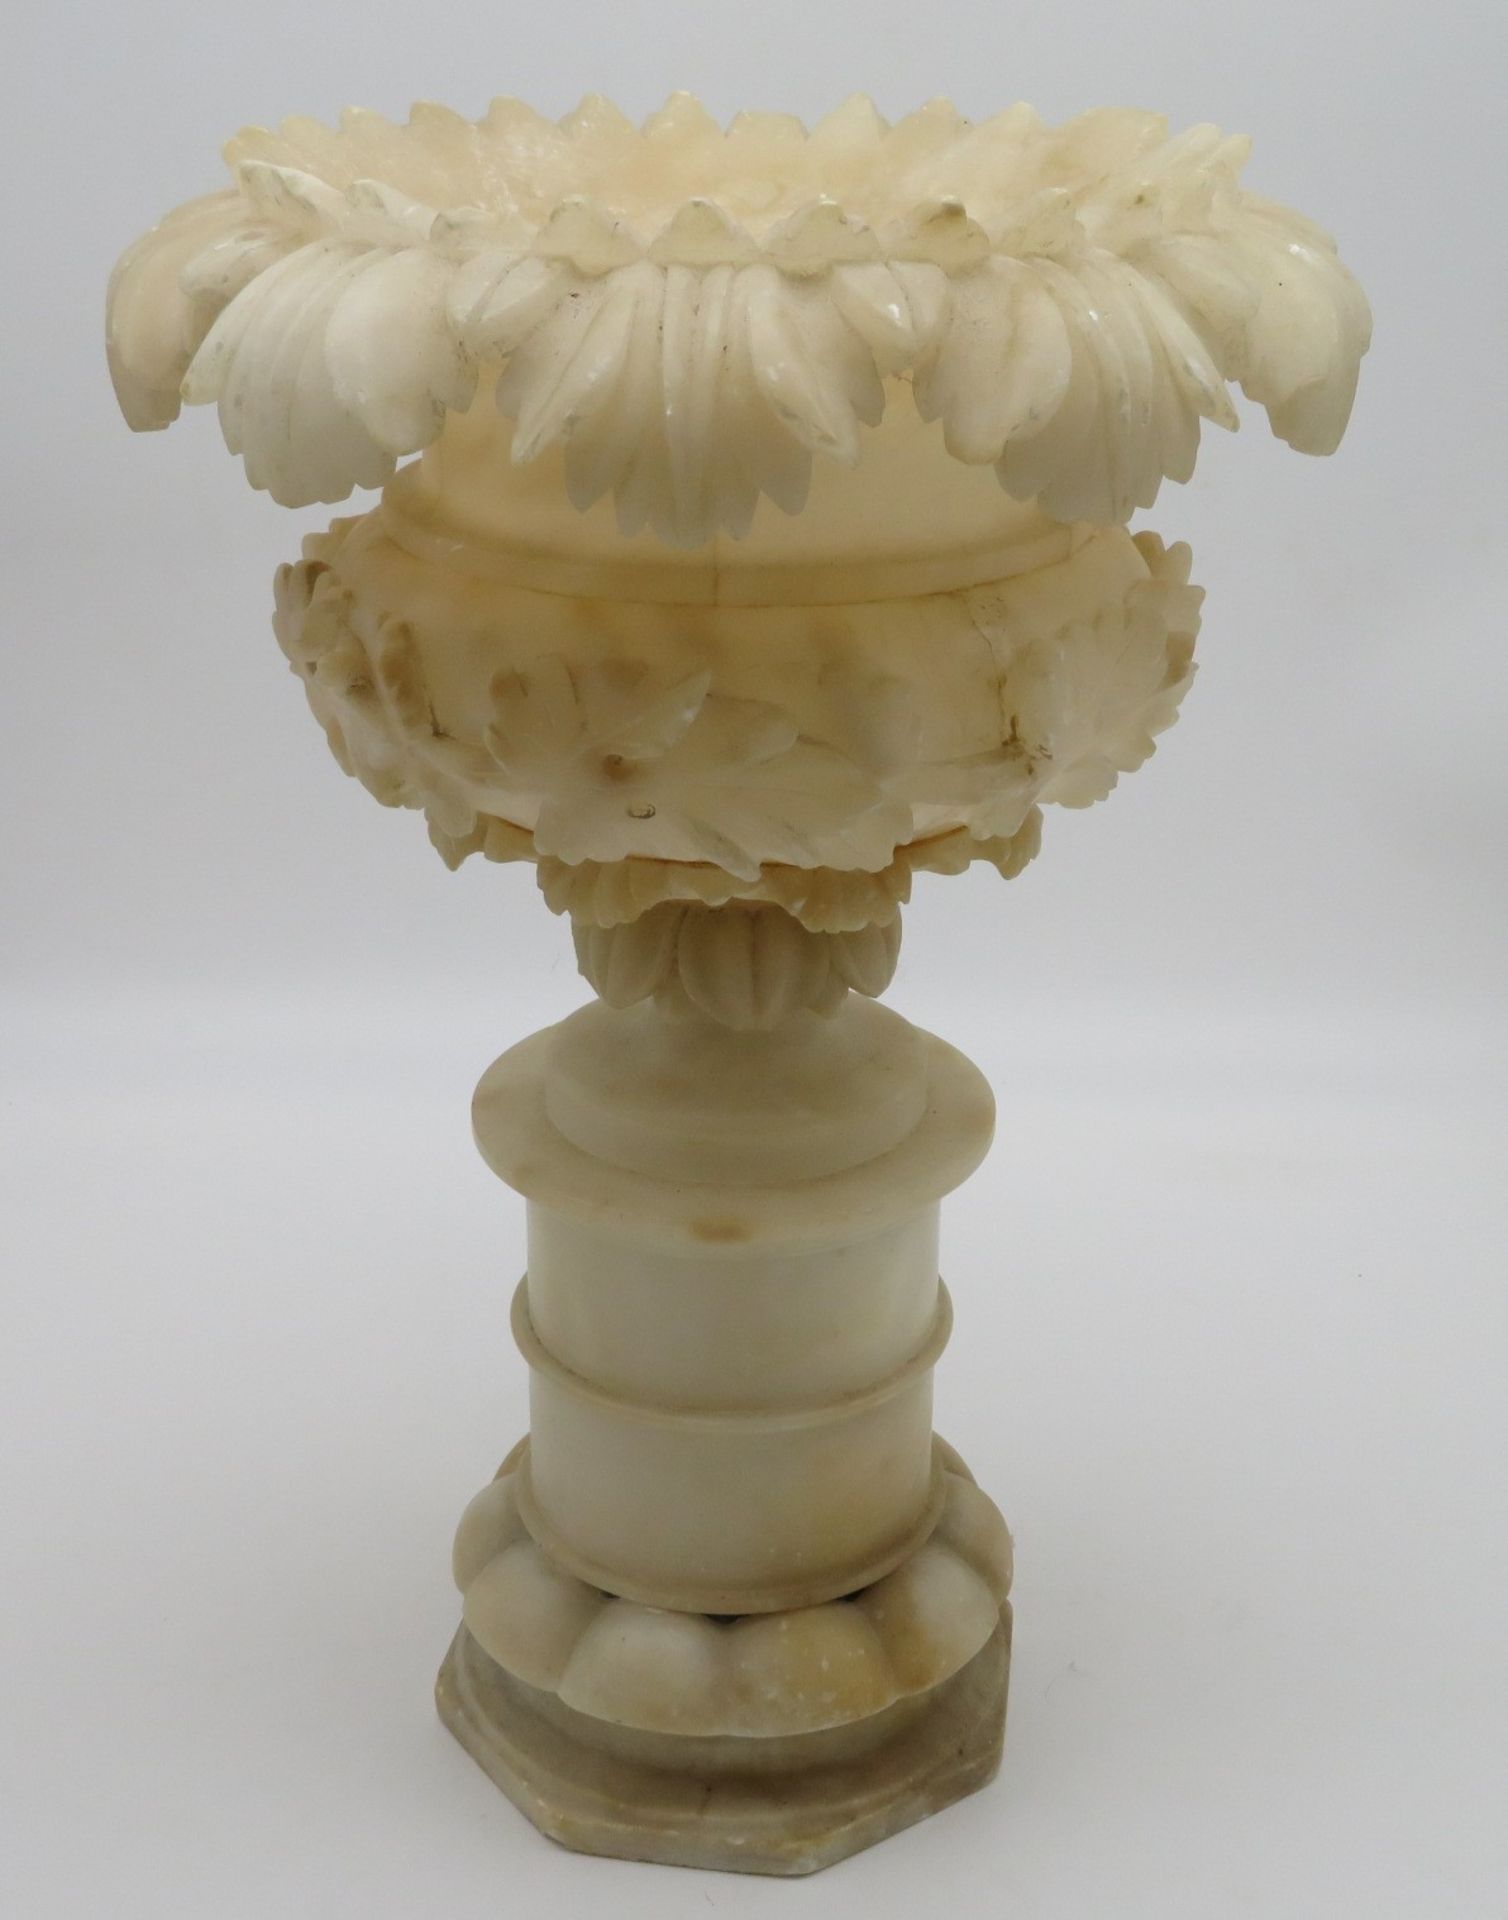 Vase, um 1900,  Alabaster, h 40 cm, d 28 cm. - Bild 2 aus 2